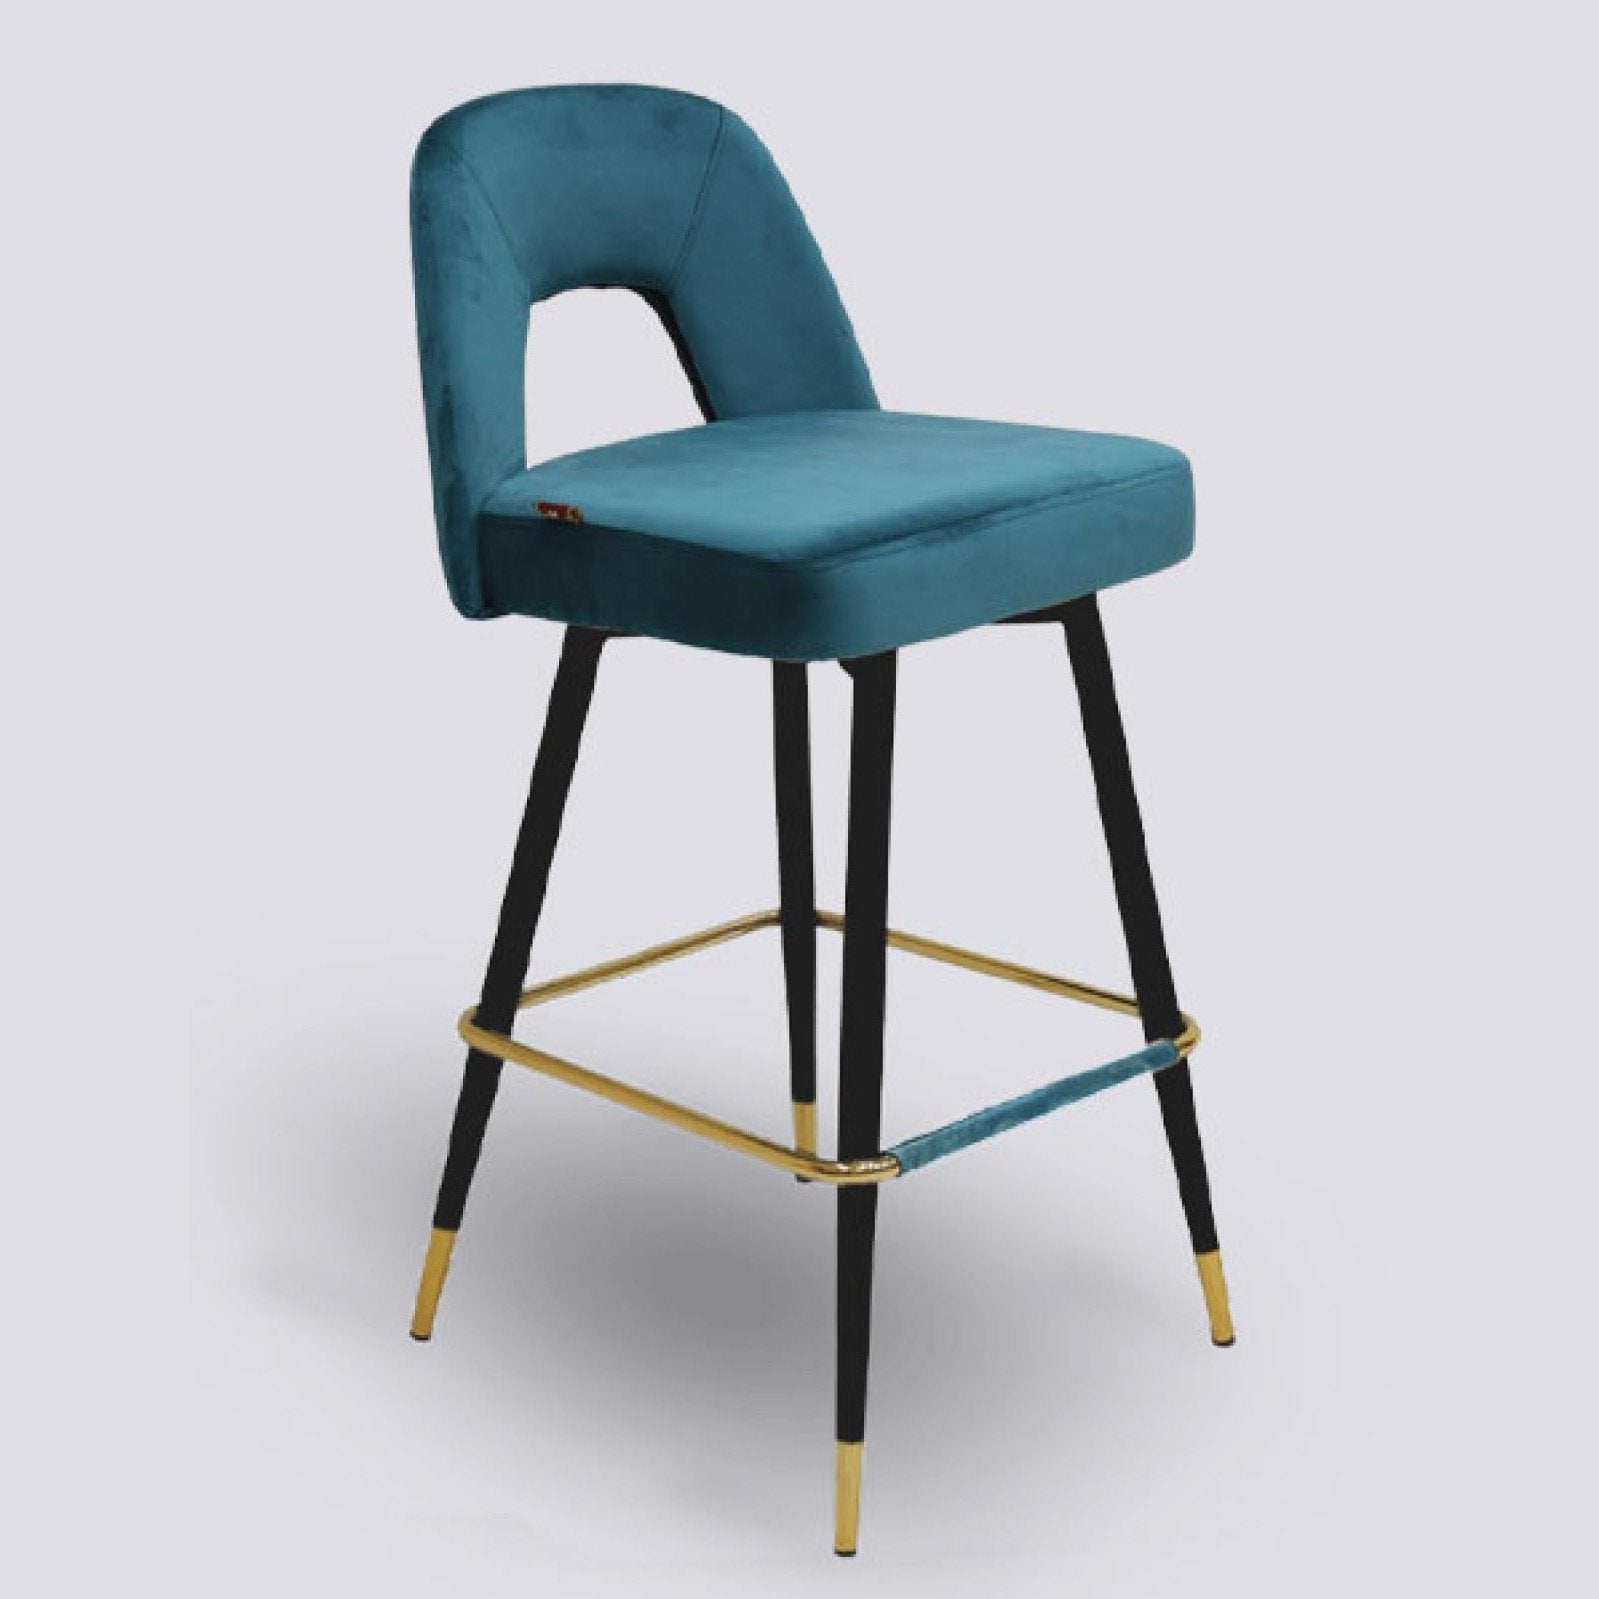 LUX-604 BAR STOOL Mobel Furniture